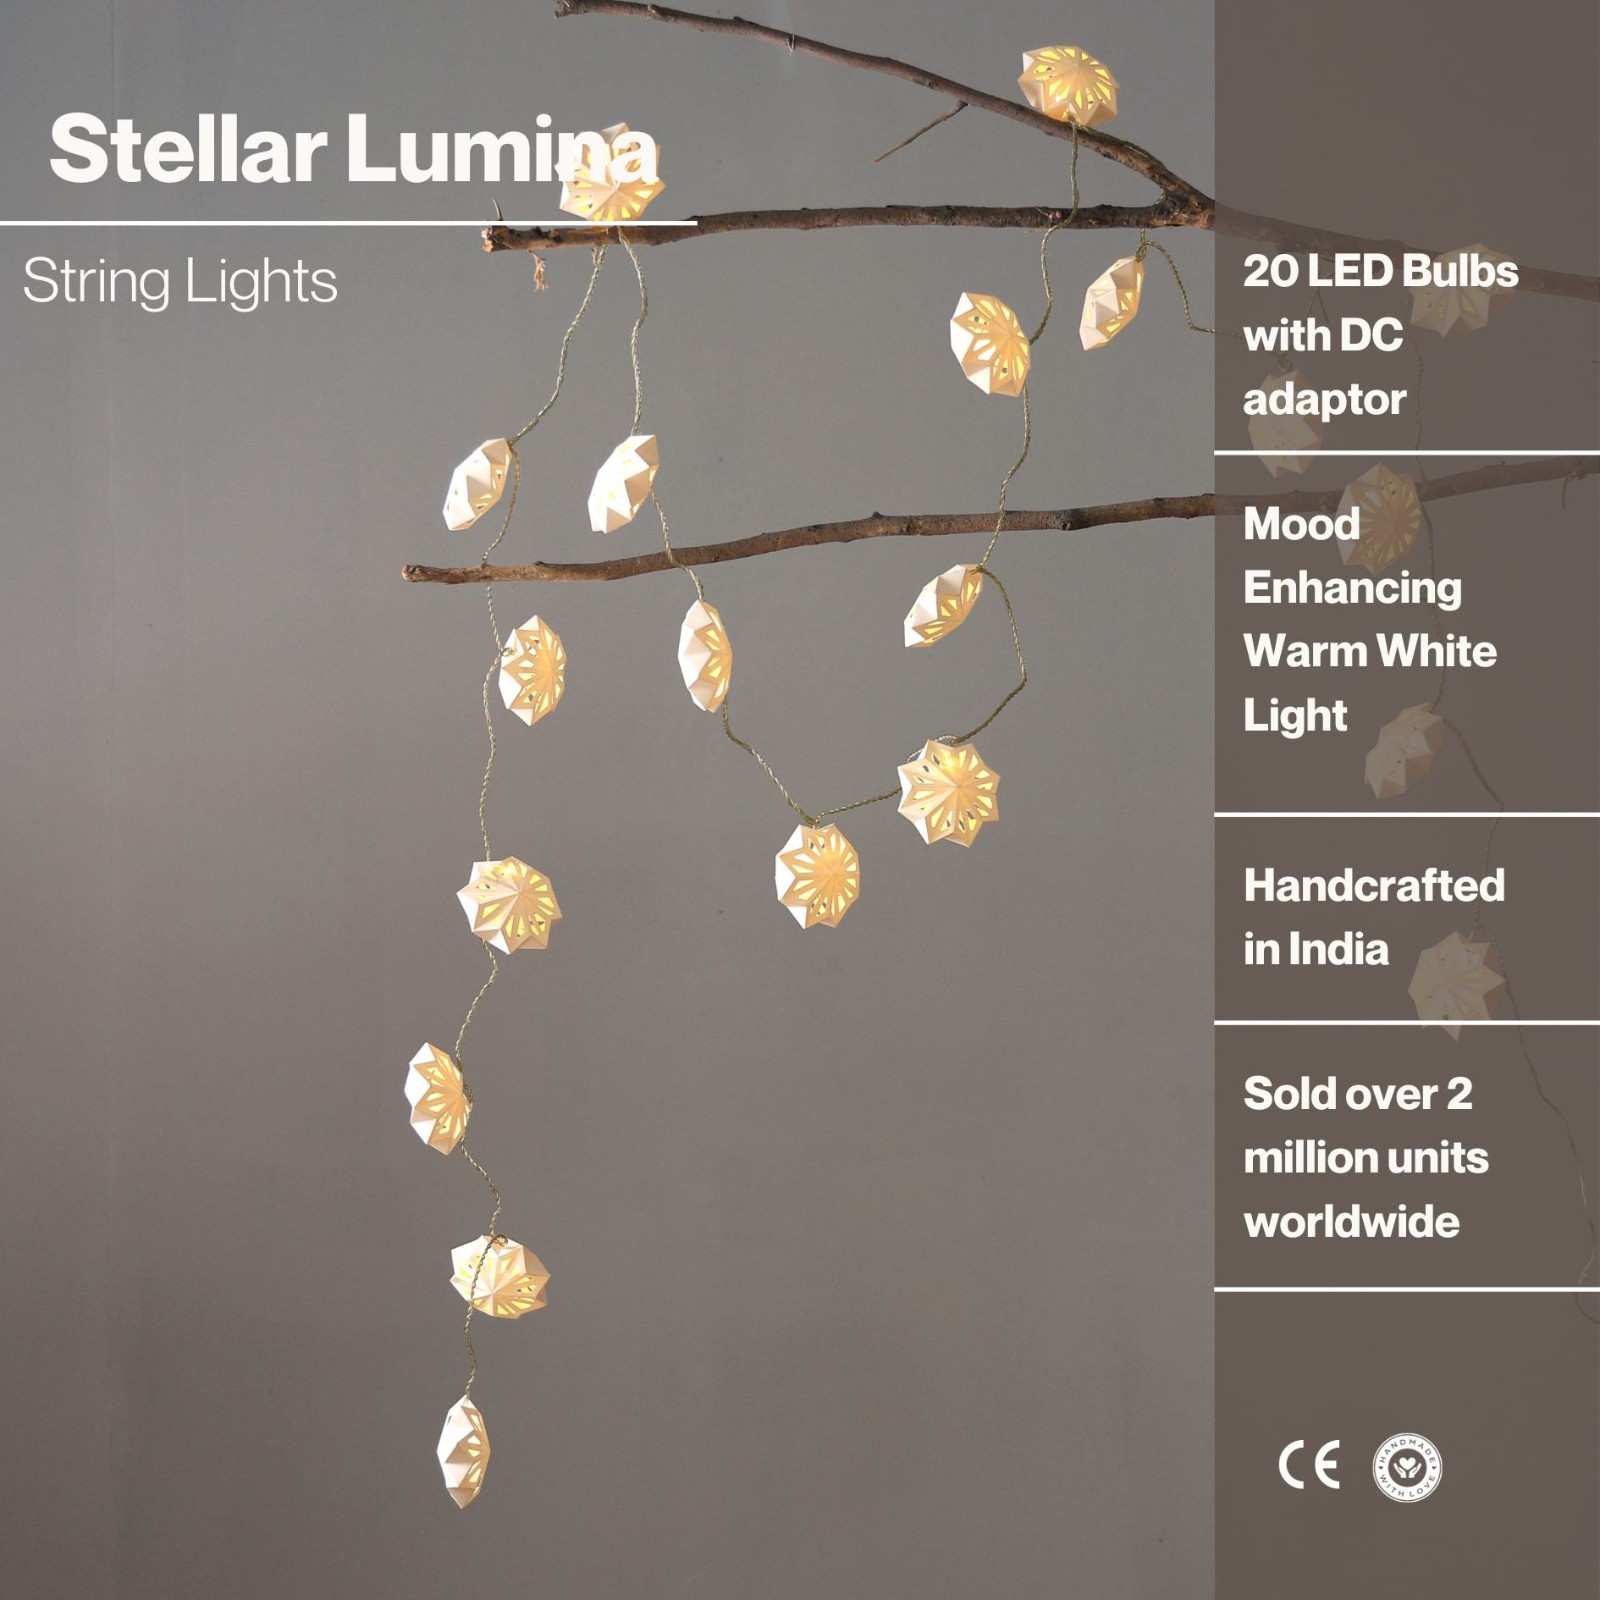 Stellar Lumina String Light